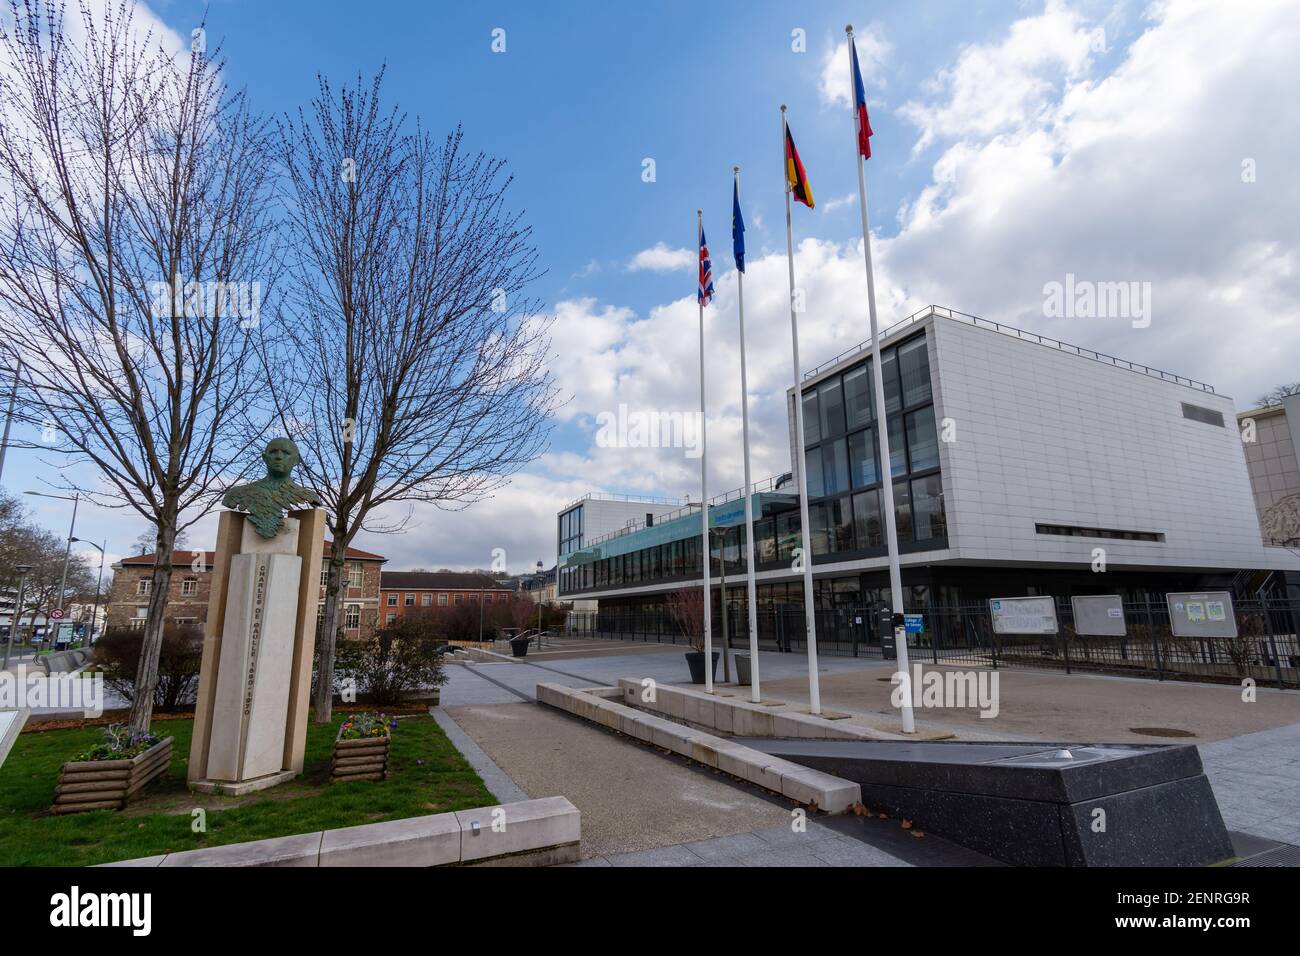 Sèvres, Francia - 26 febbraio 2021: Vista della piazza Charles de Gaulle con il busto di Charles de Gaulle e il collegio di Sèvres (internazionale s Foto Stock